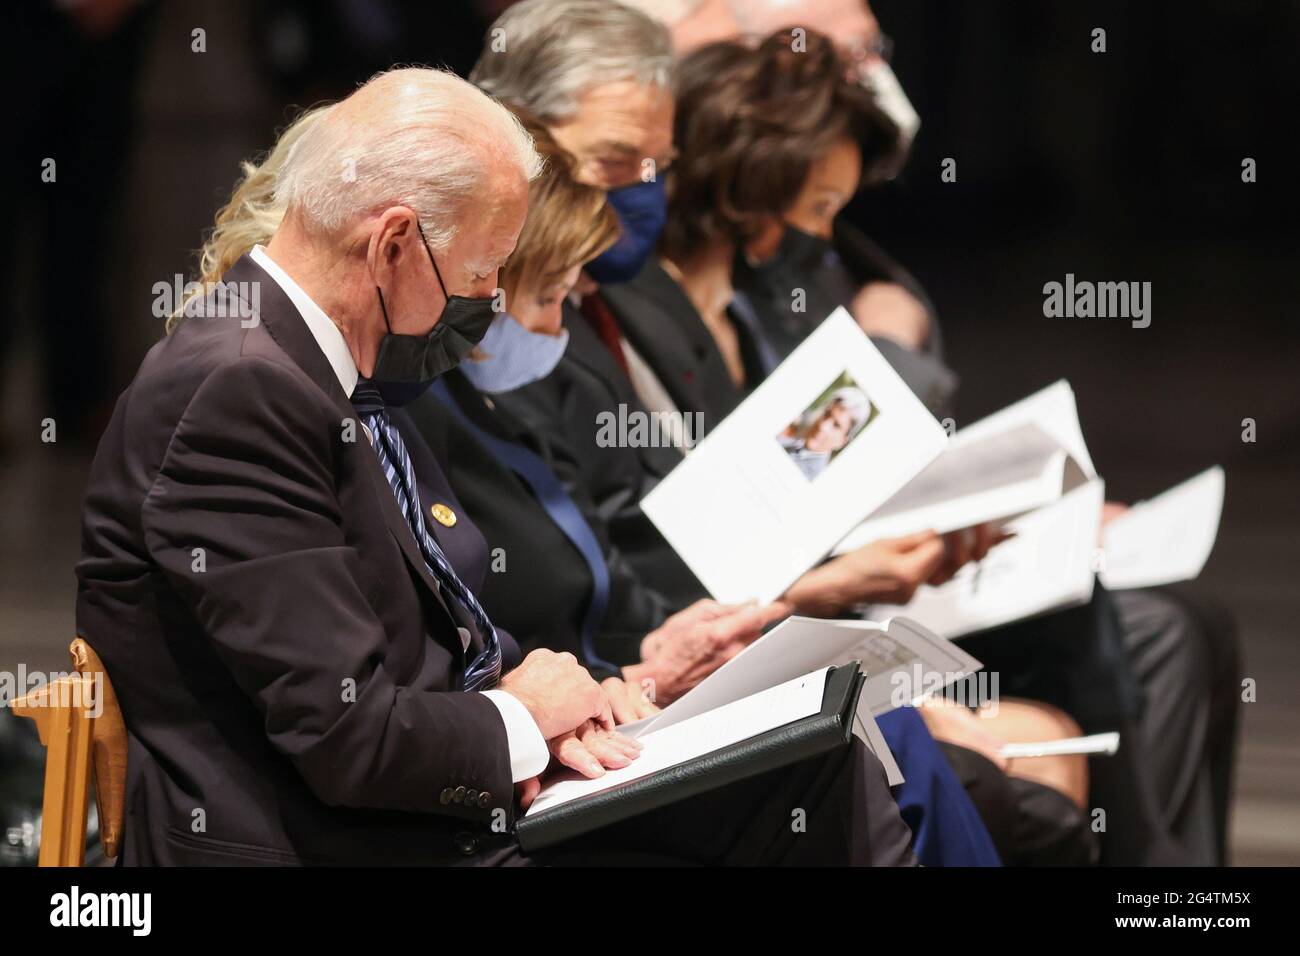 Le président américain Joe Biden assiste à la cérémonie funéraire de l'ancien sénateur John Warner à la cathédrale nationale de Washington, DC, États-Unis le 23 juin 2021. Oliver Contreras/Pool via REUTERS Banque D'Images